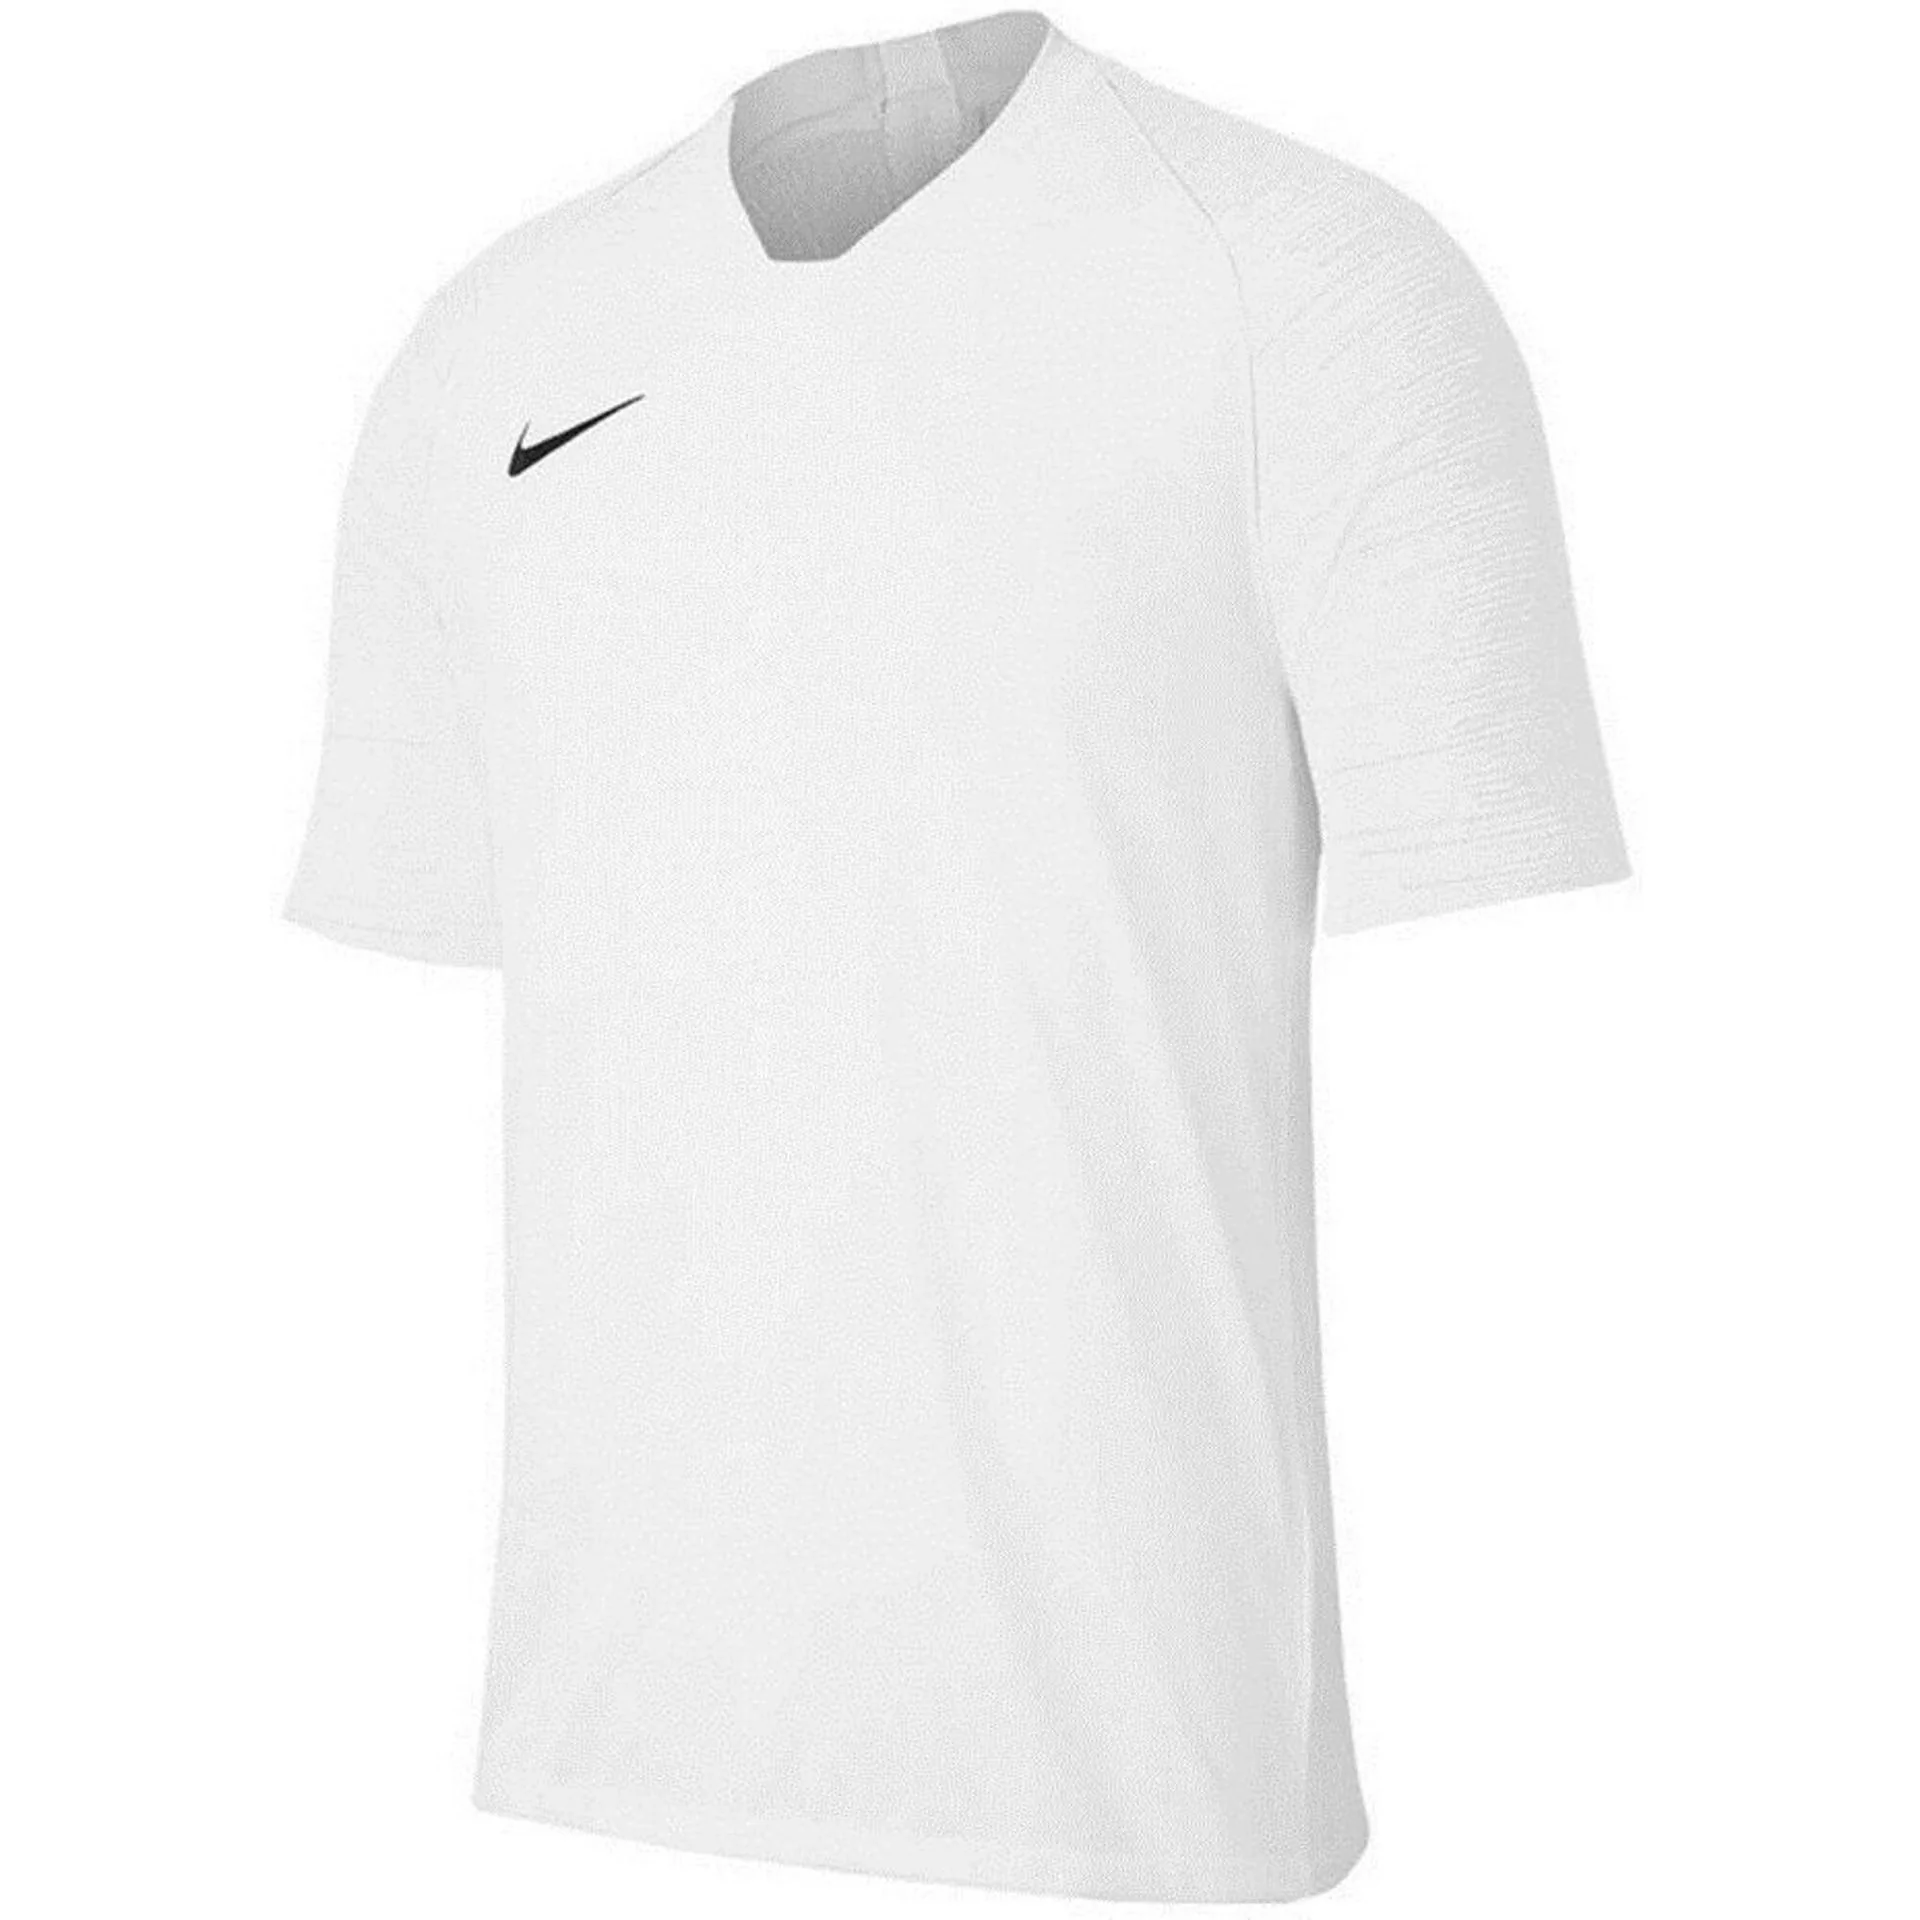 Koszulka dla dzieci Nike Dry Strike JSY SS biała AJ1027 101 - Ceny i opinie  na Skapiec.pl